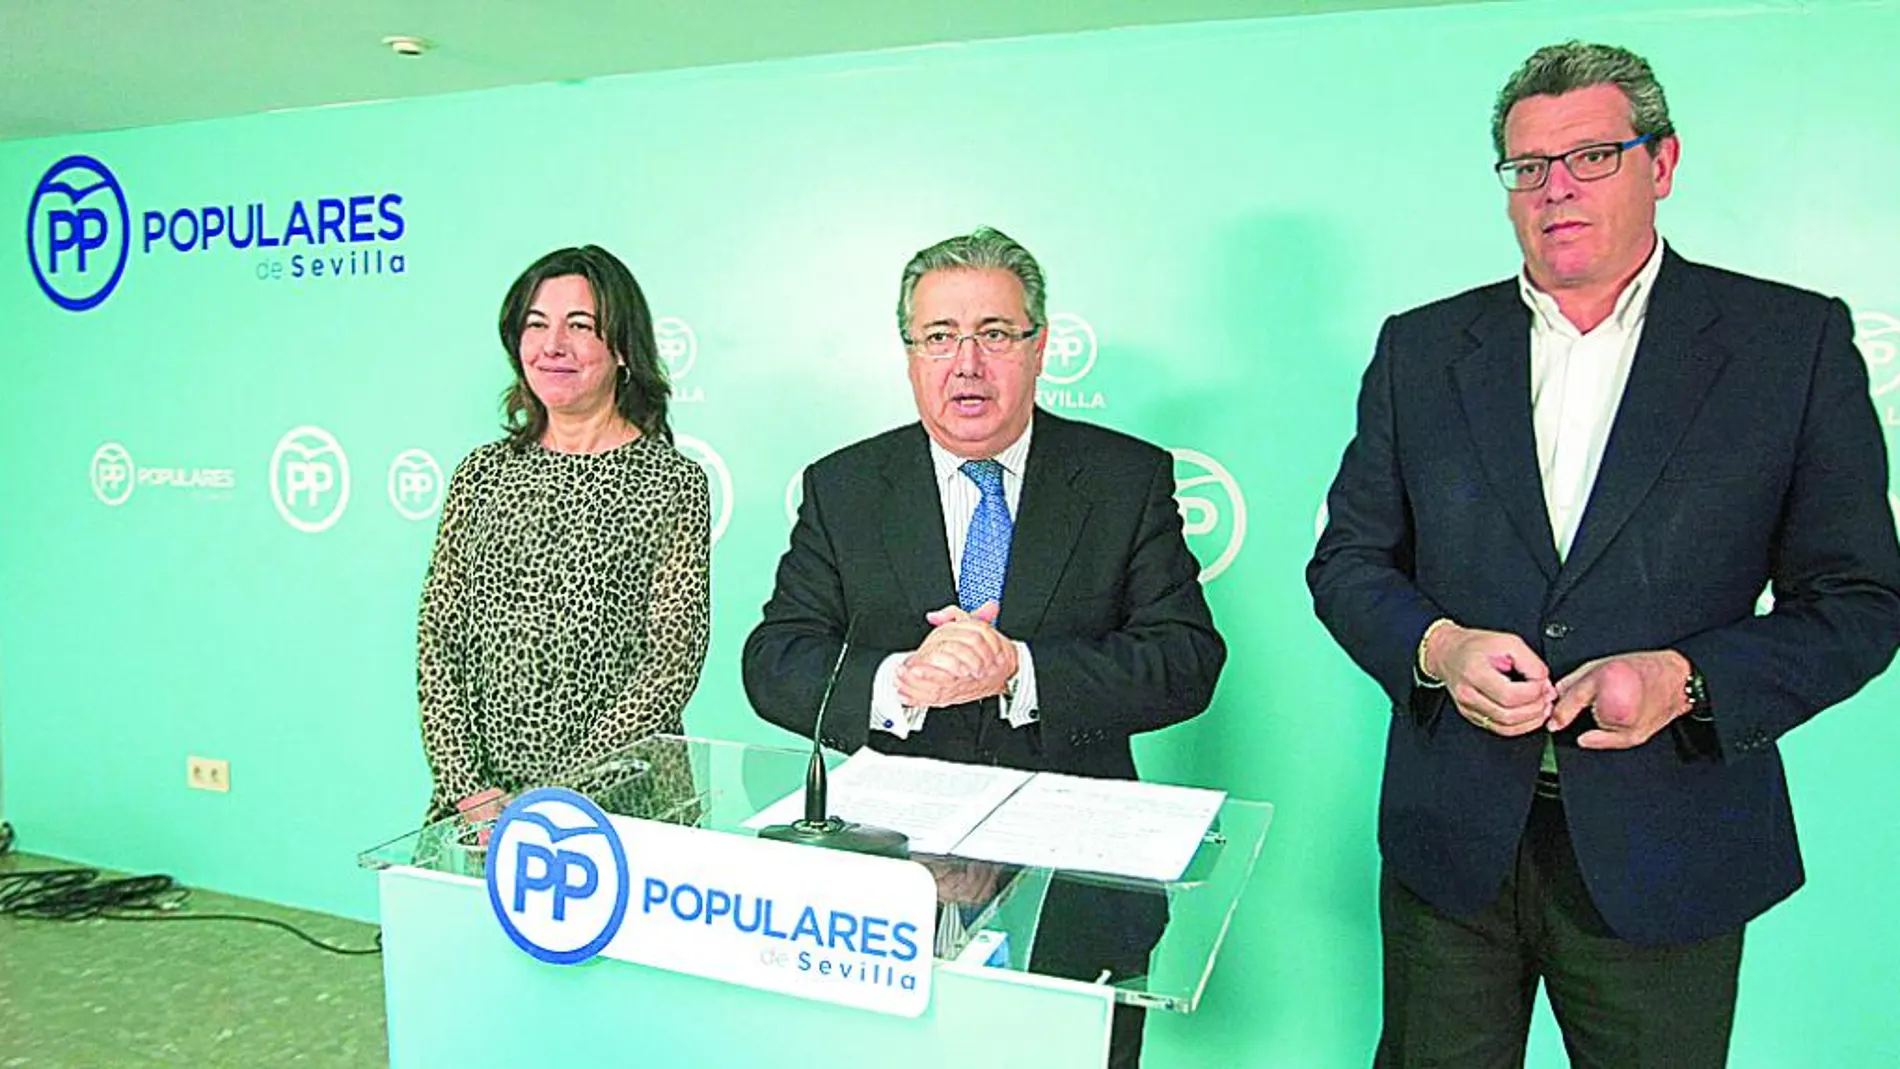 El ex alcalde de Sevilla volvió a tender a la mano a Juan Espadas, ofreciendo una oposición constructiva